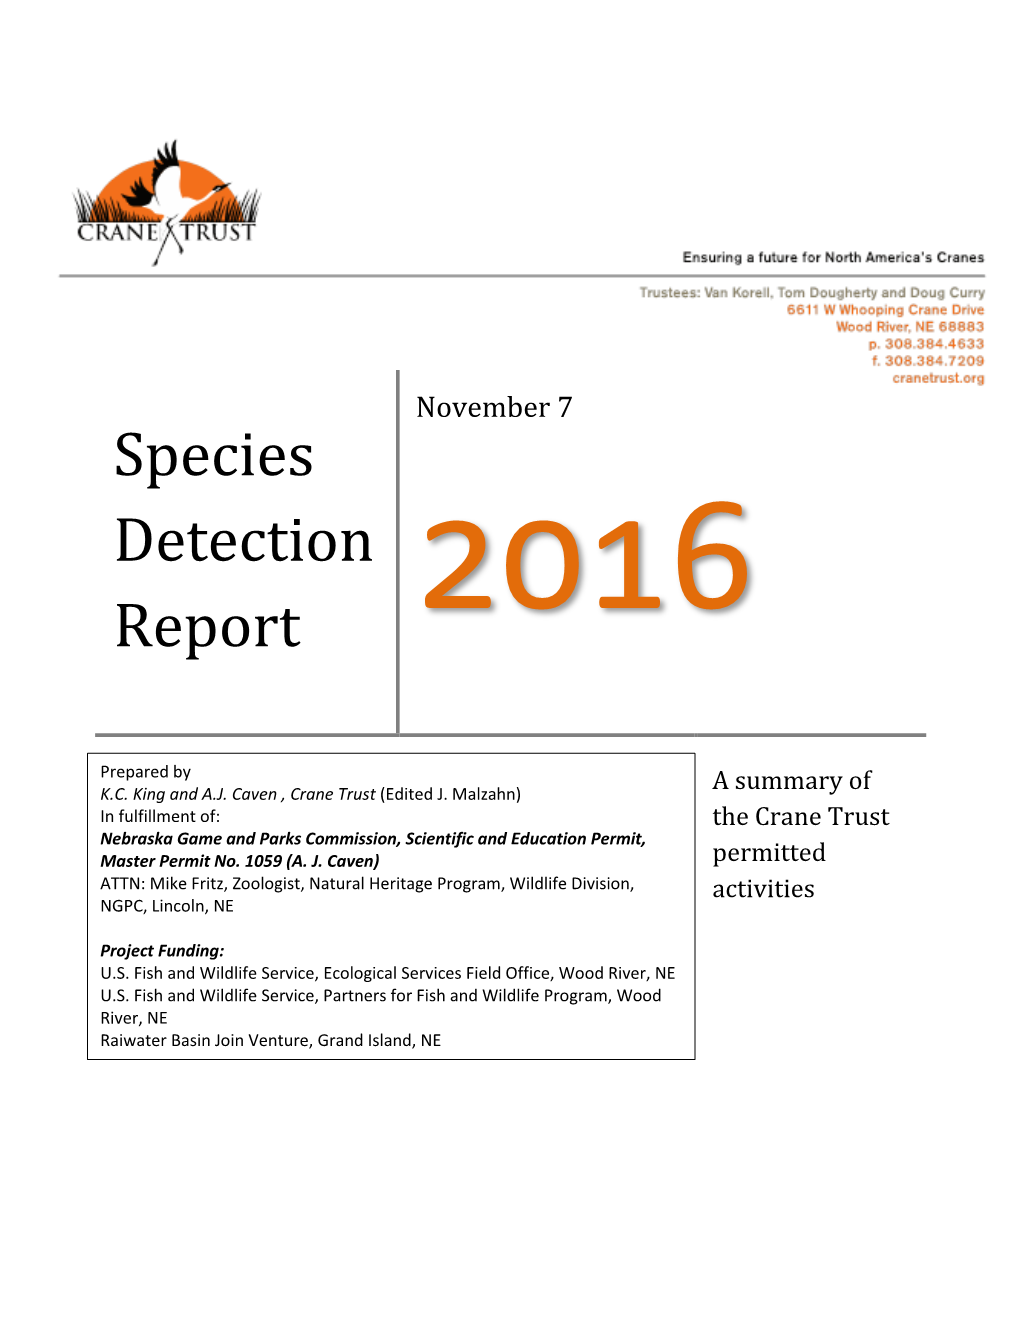 Species Detection Report 2016